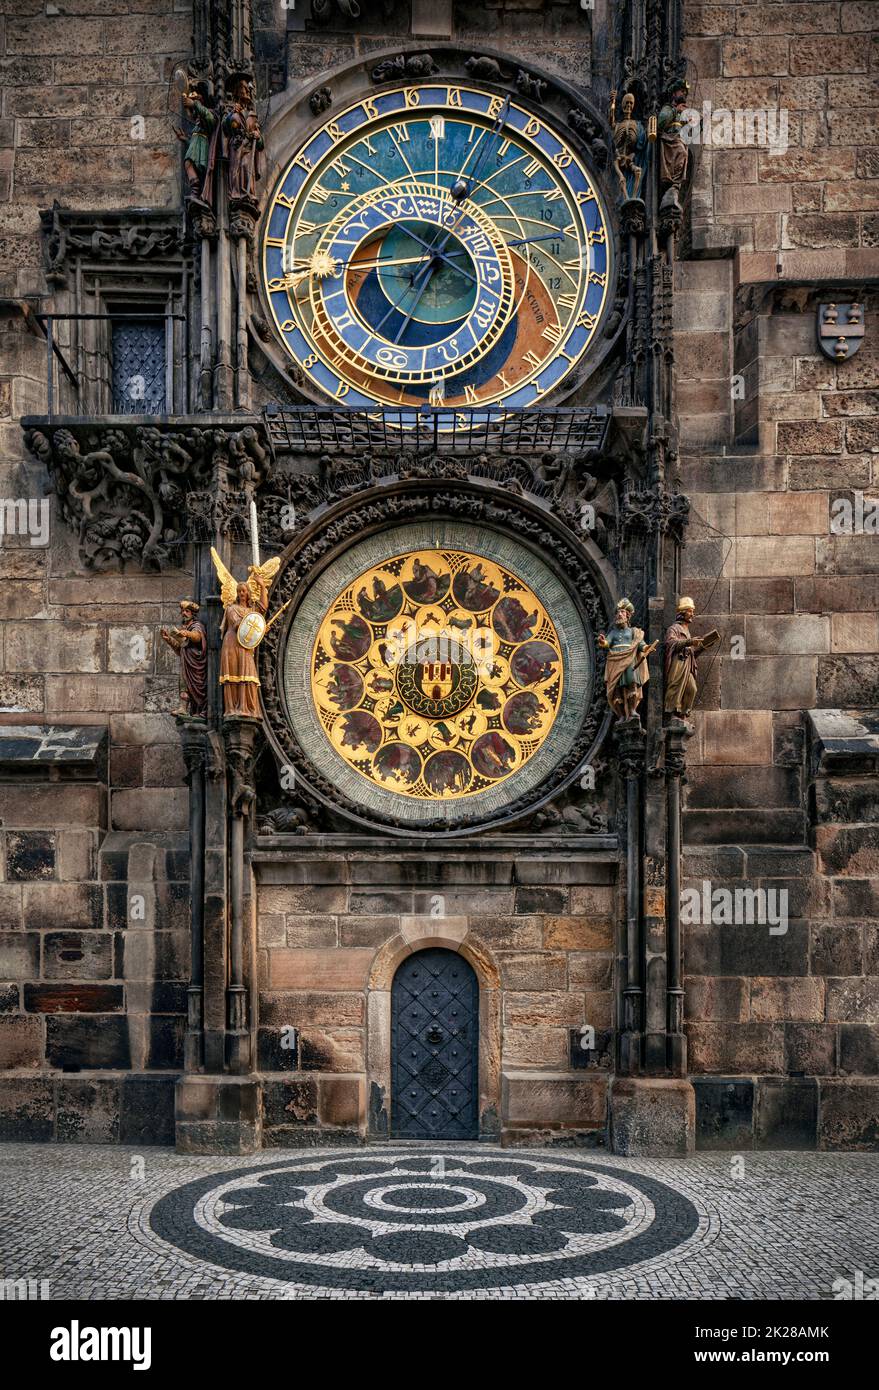 Prager astronomische Uhr oder Prager Orloj - mittelalterliche gotische Architektur, Tschechische Republik Stockfoto